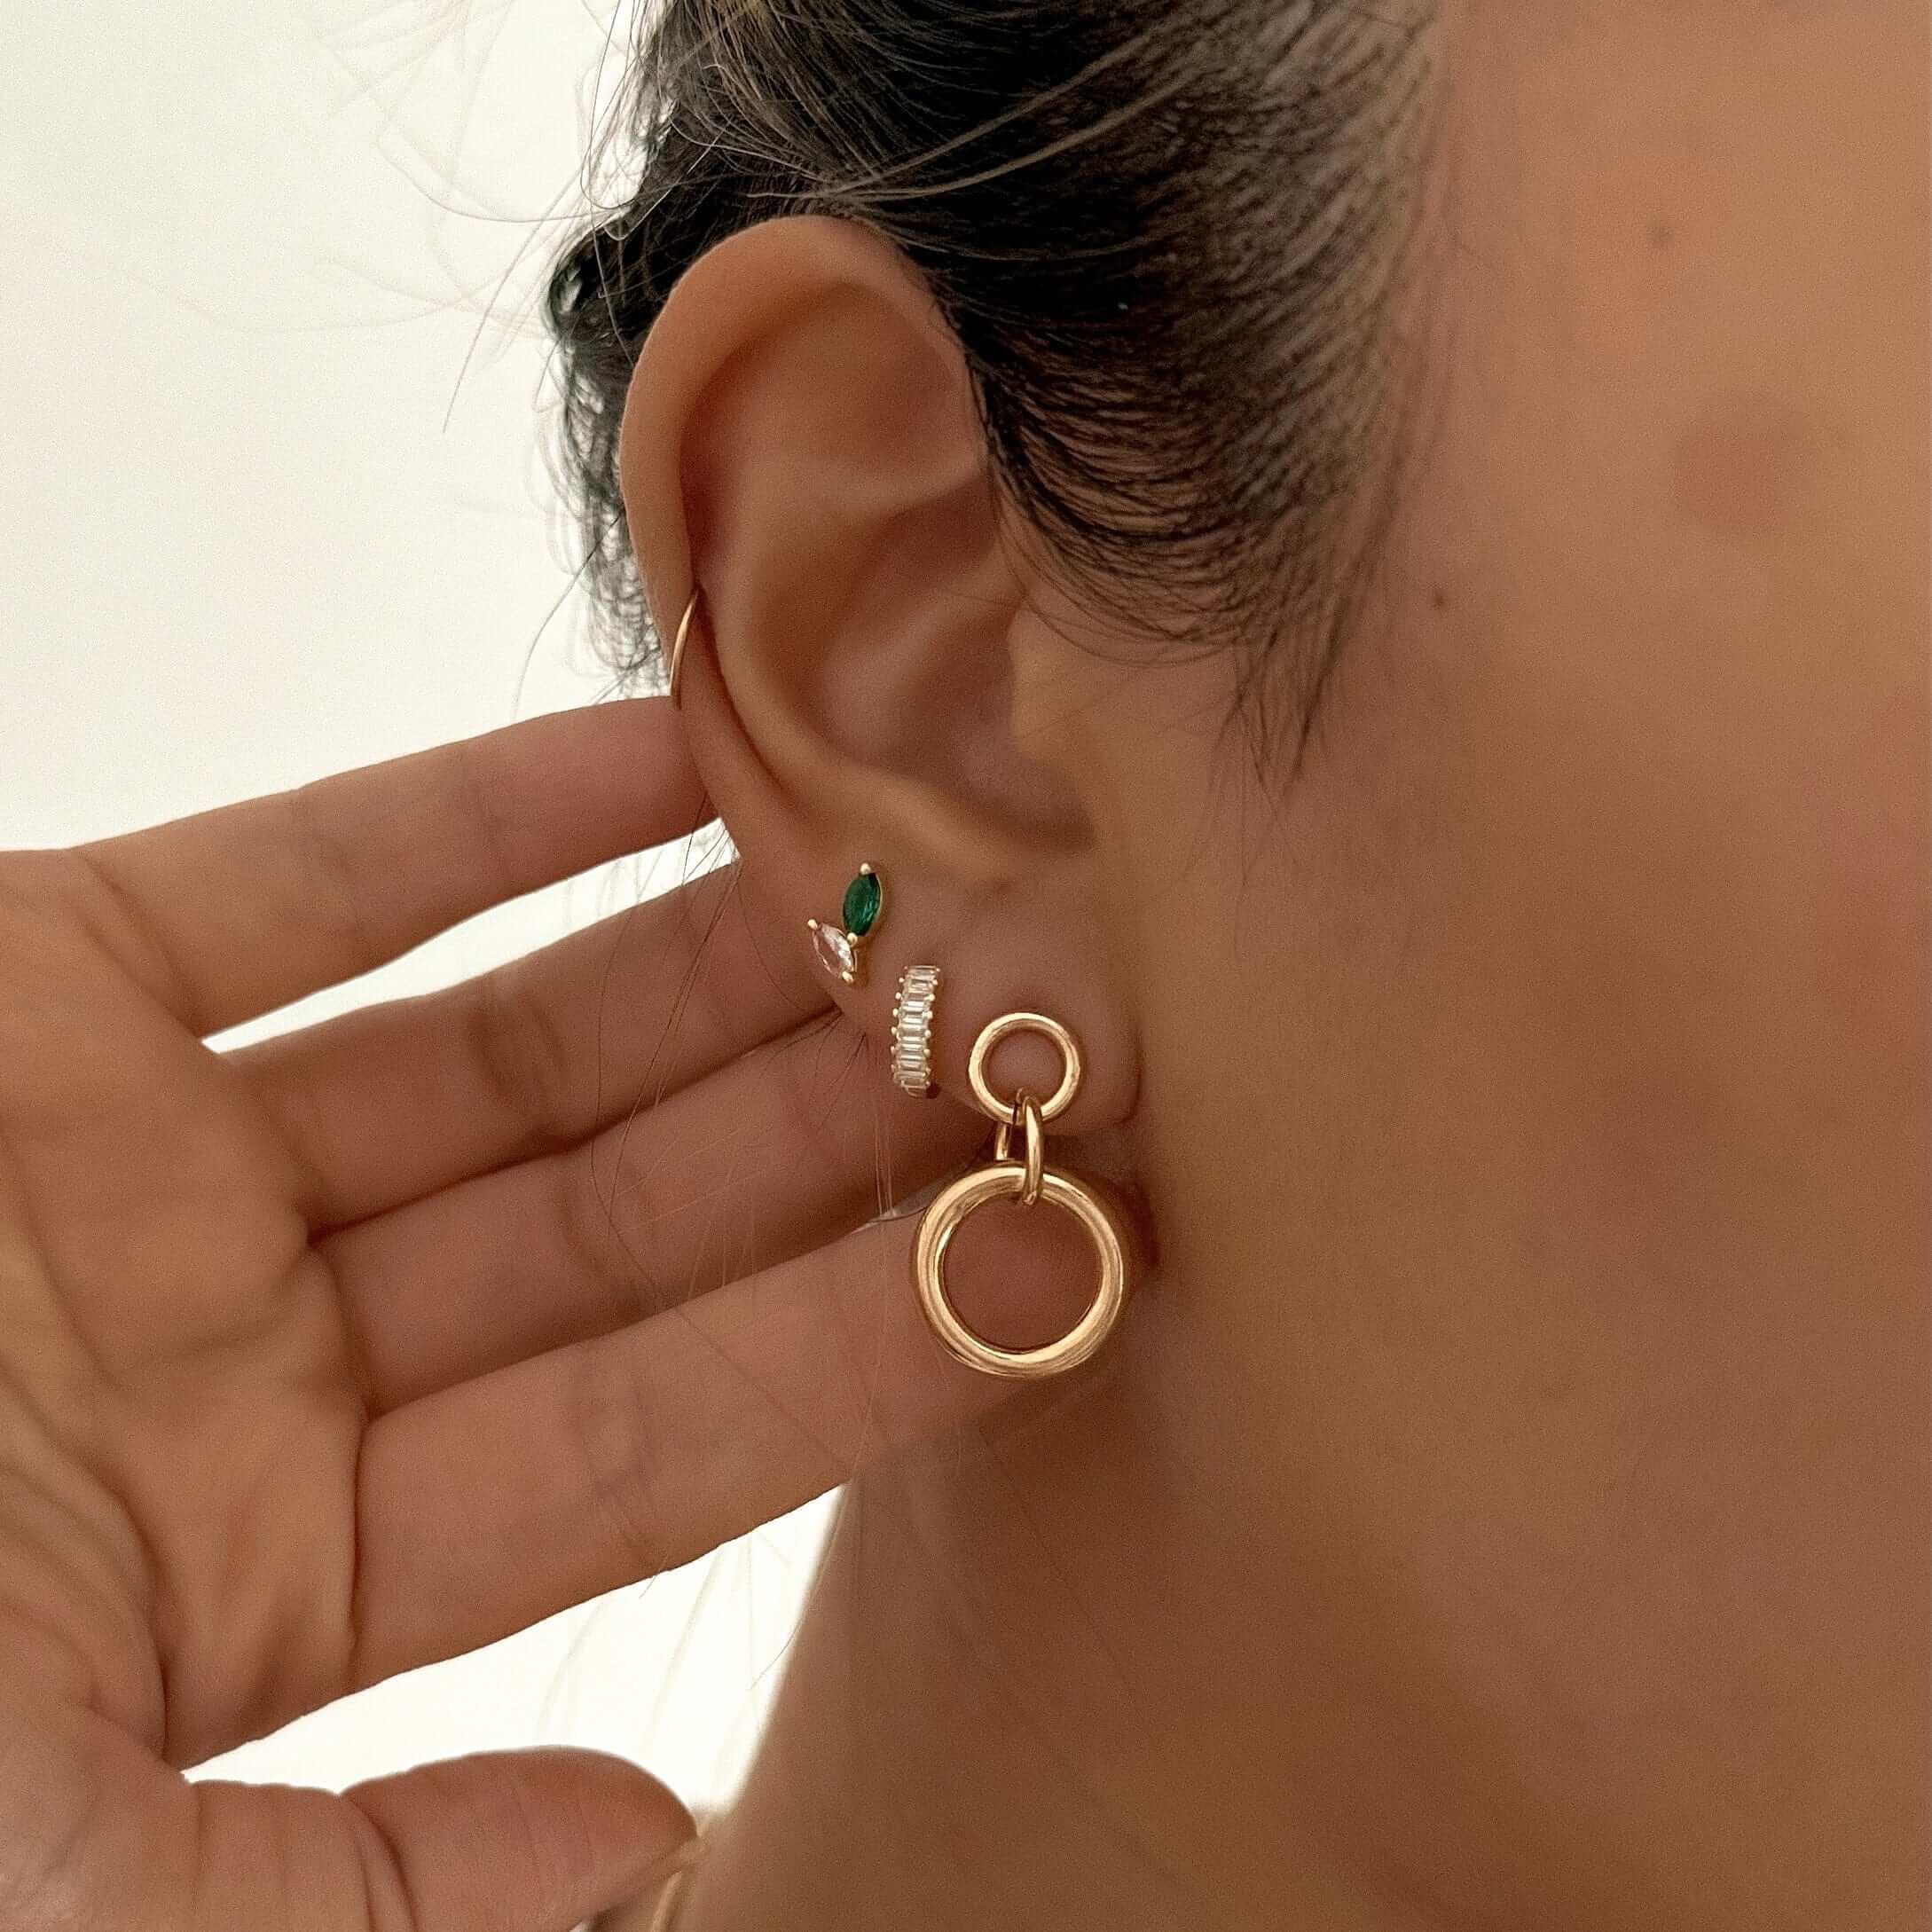 LE sensor earrings Alora Studs - Emerald